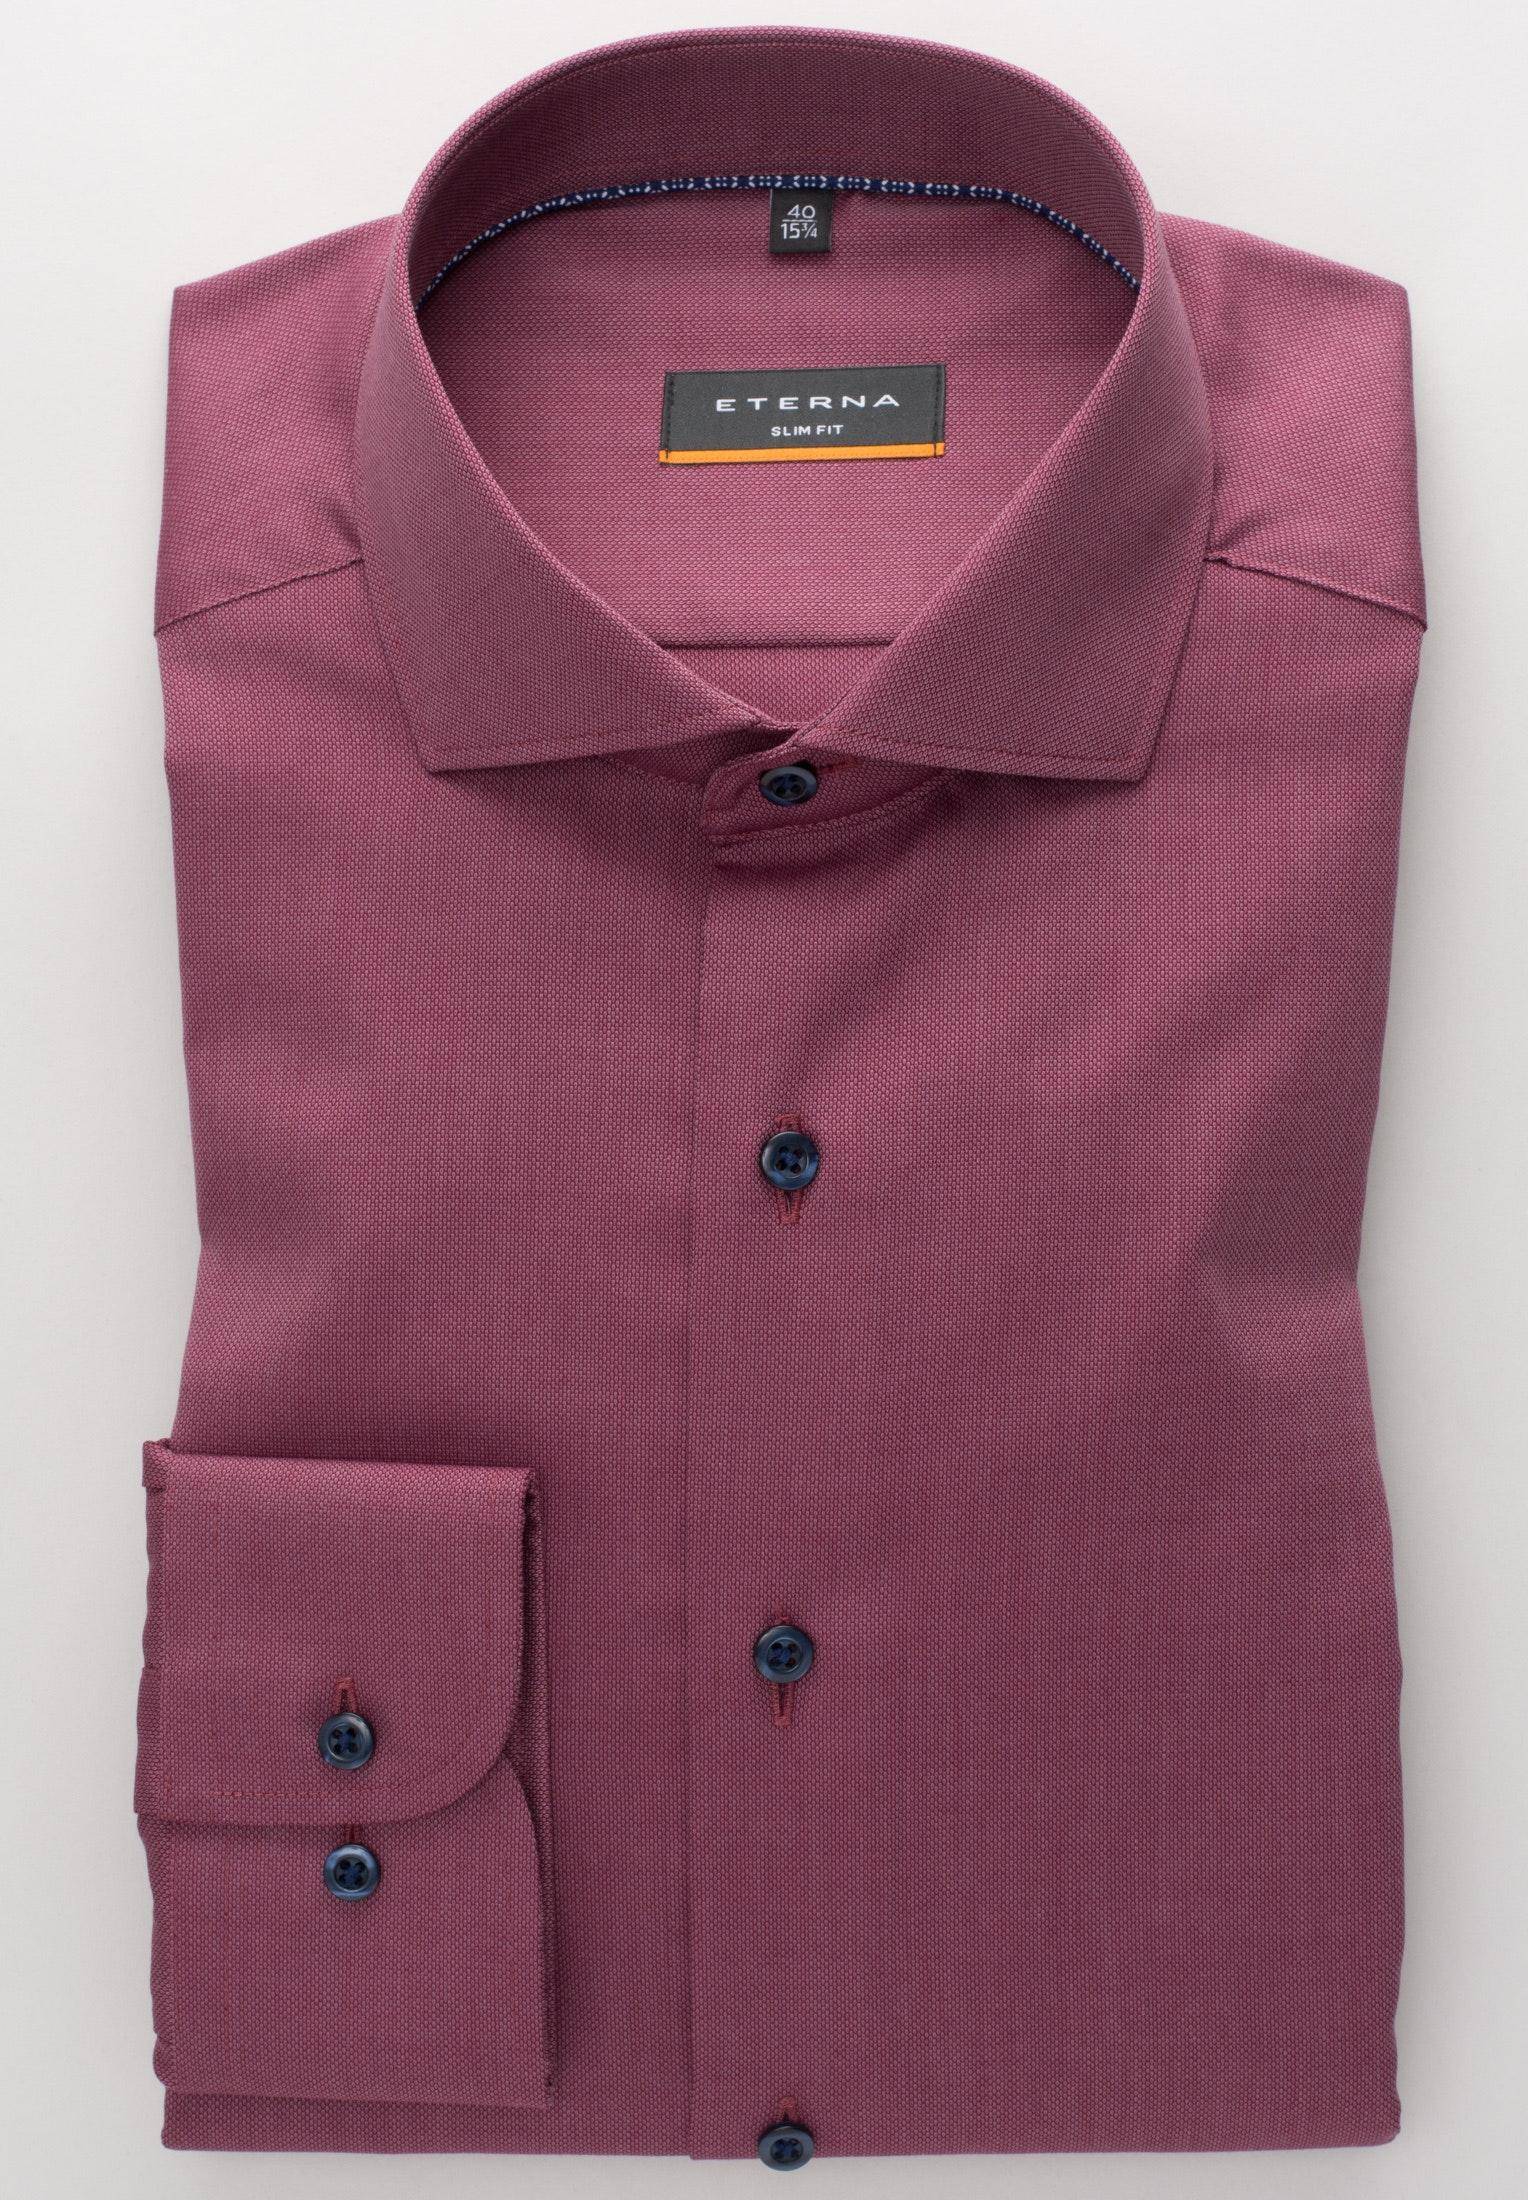 Мужская рубашка ETERNA, бордовая, цвет бордовый, размер 48 - фото 2